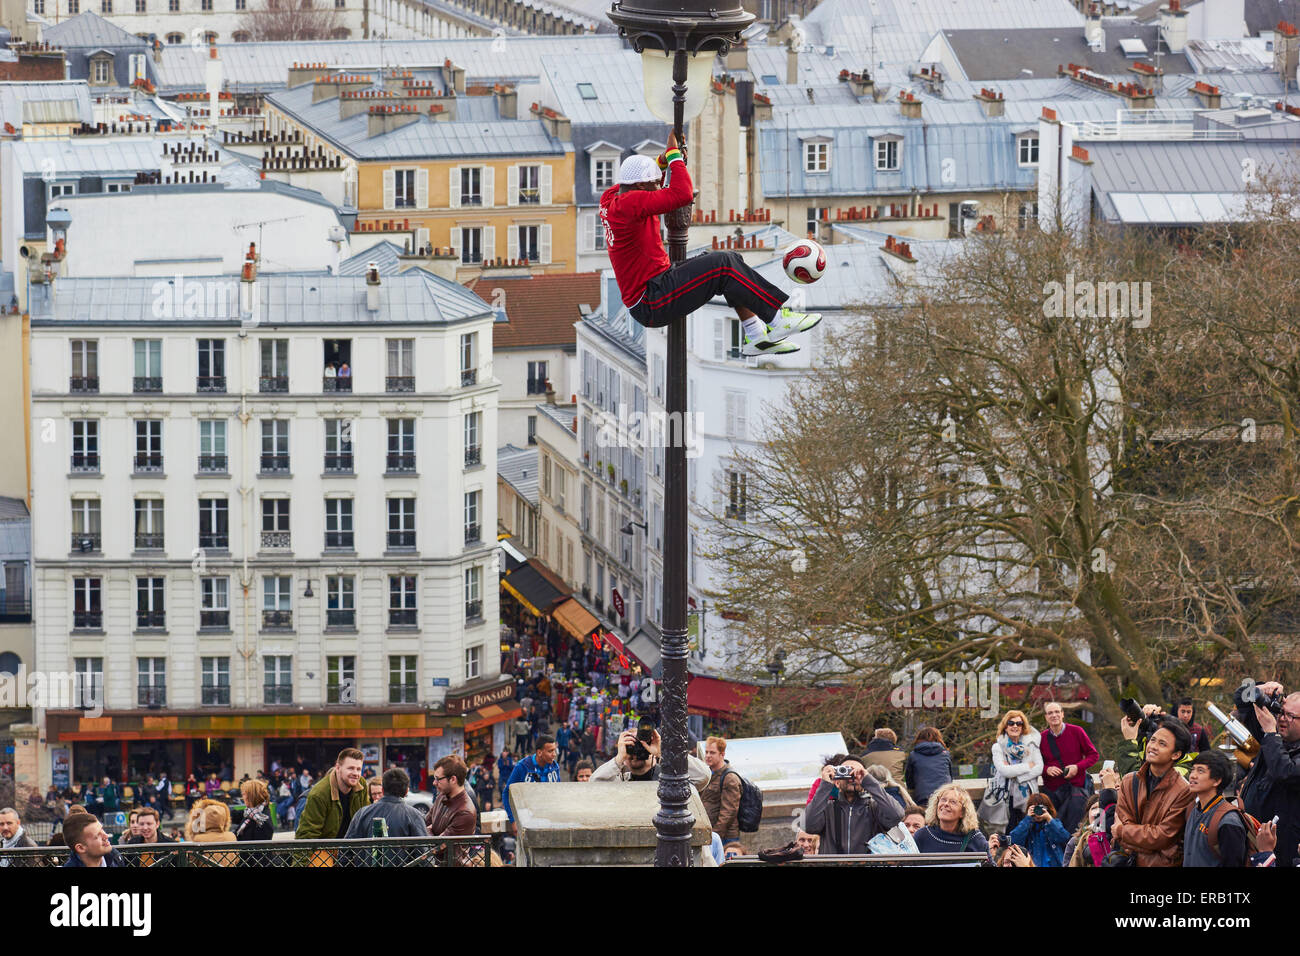 Ausgleich eines Spinnerei Fußballs beim Klettern auf einer Straßenlaterne Straßenkünstler beobachtet von Touristen Montmartre Paris Frankreich Stockfoto